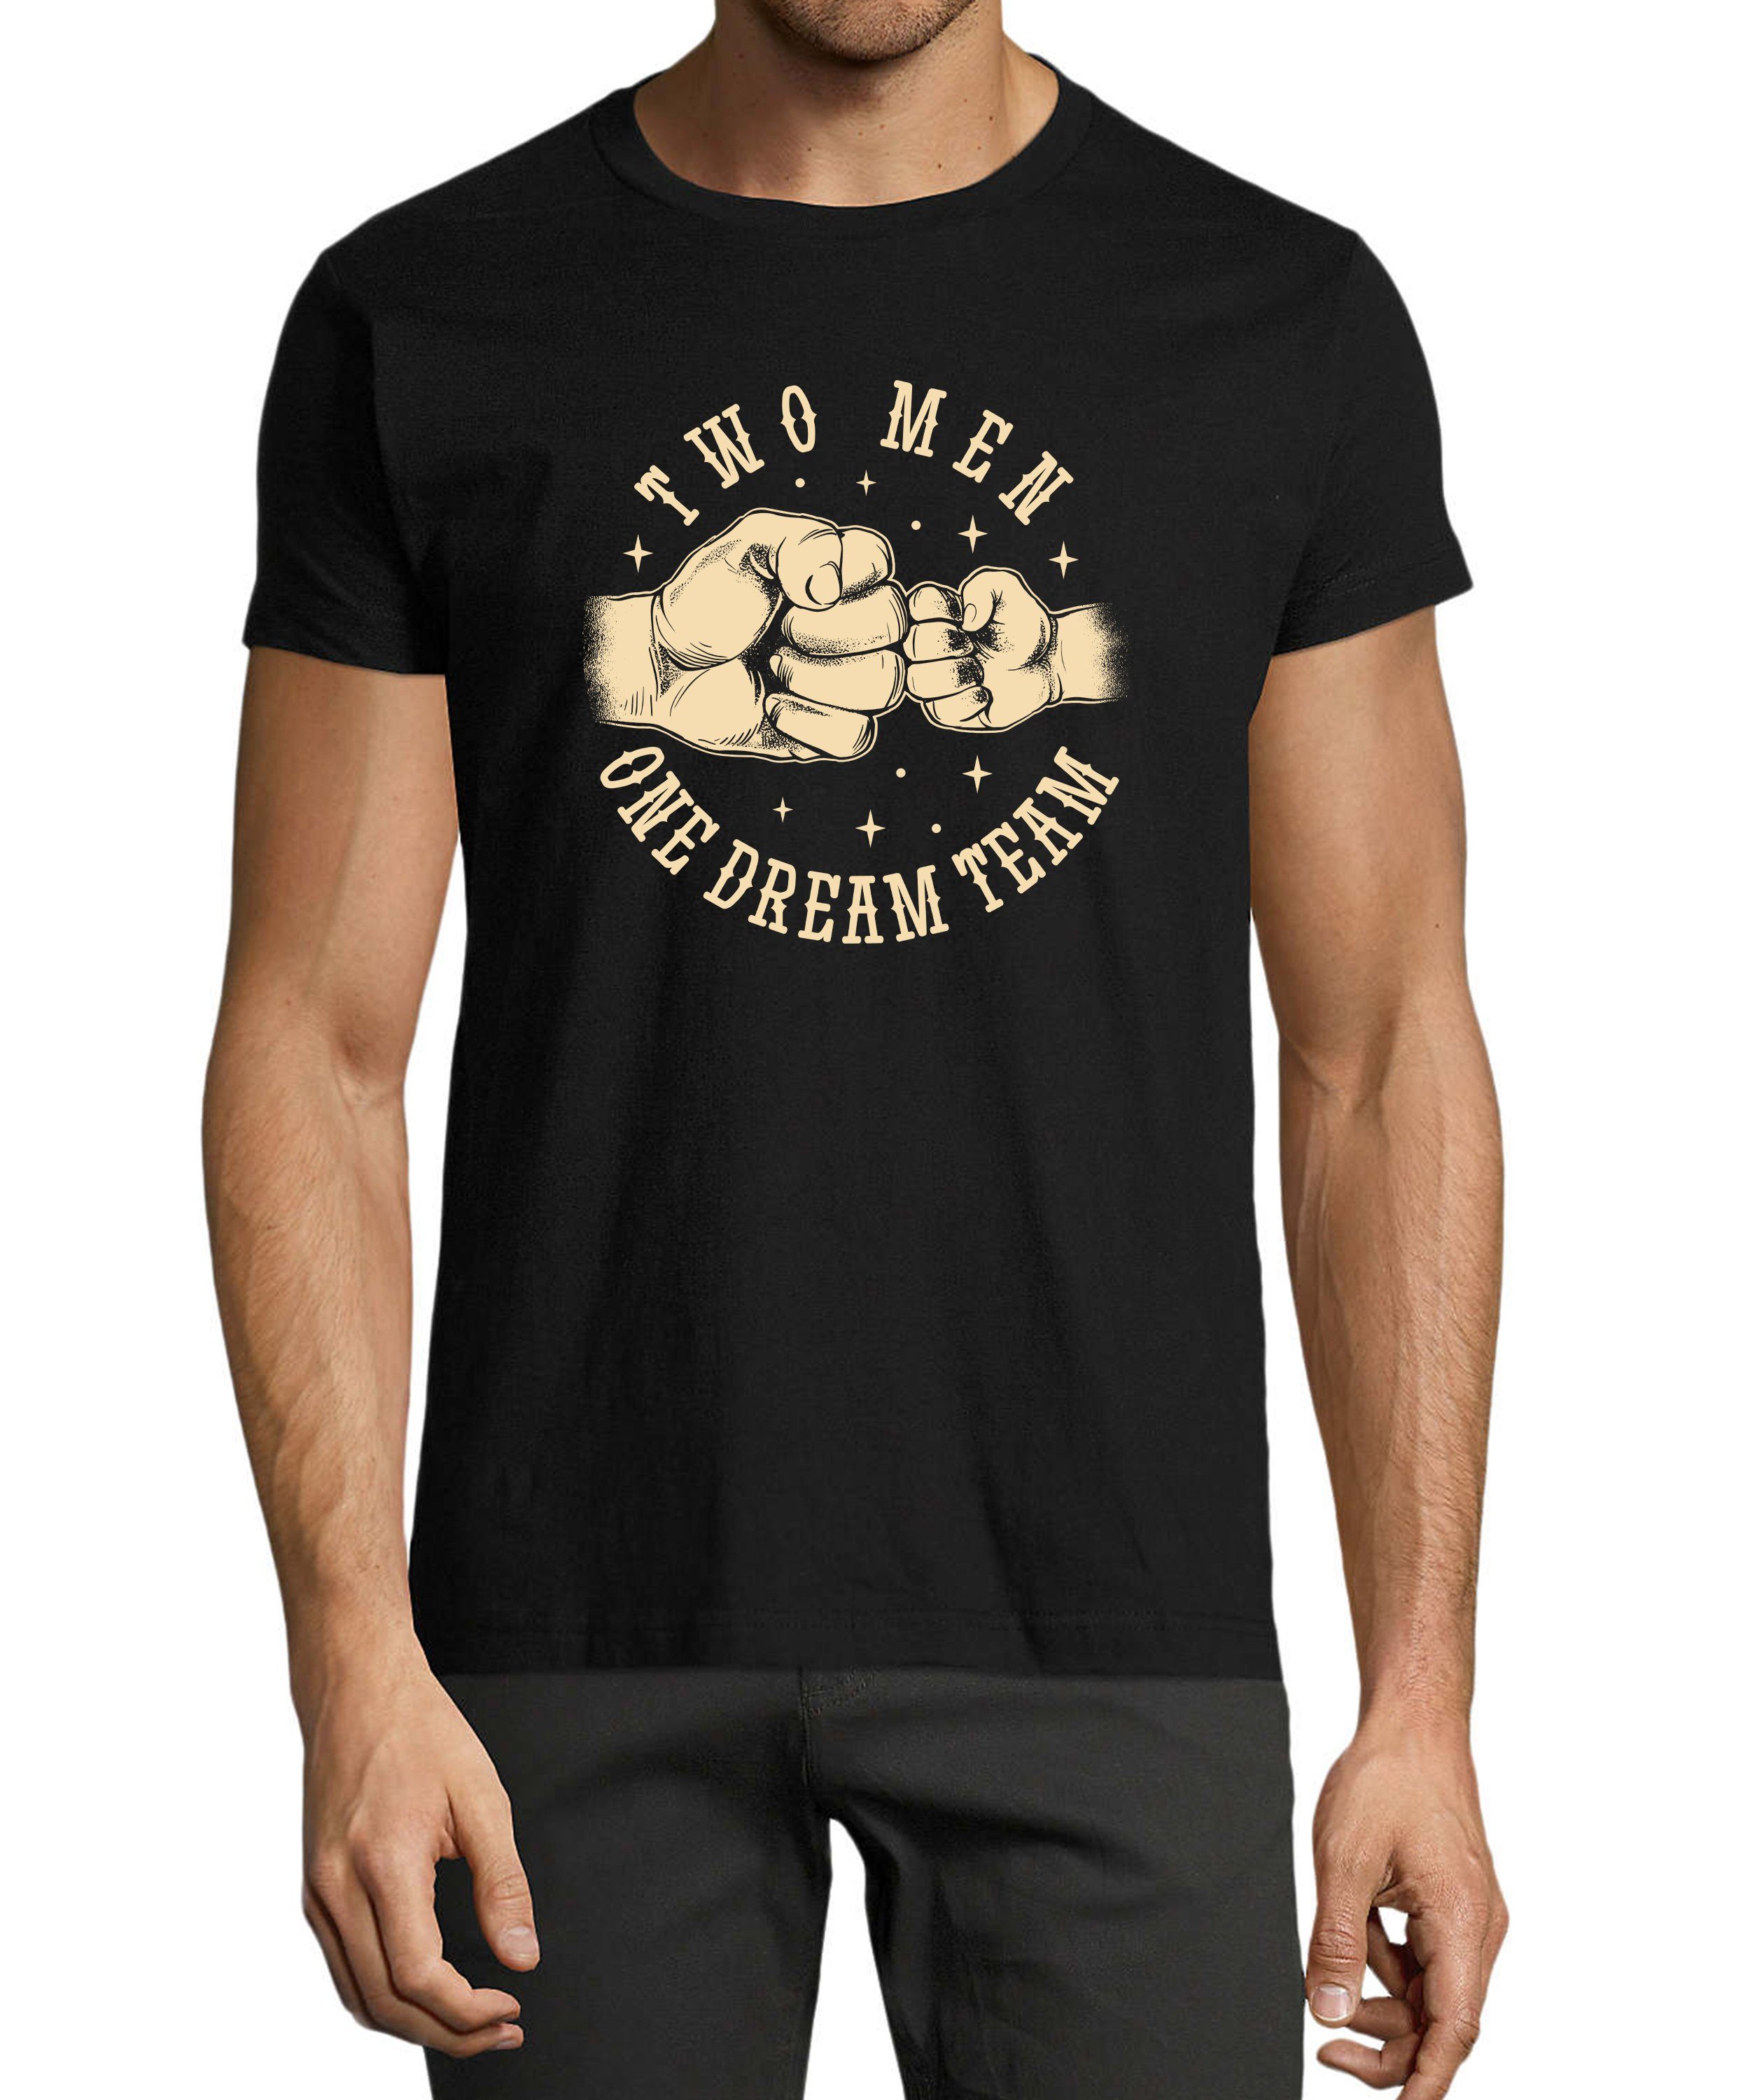 MyDesign24 T-Shirt Herren Print Shirt - Vater mit Sohn Dream Team Baumwollshirt mit Aufdruck Regular Fit, i306 schwarz